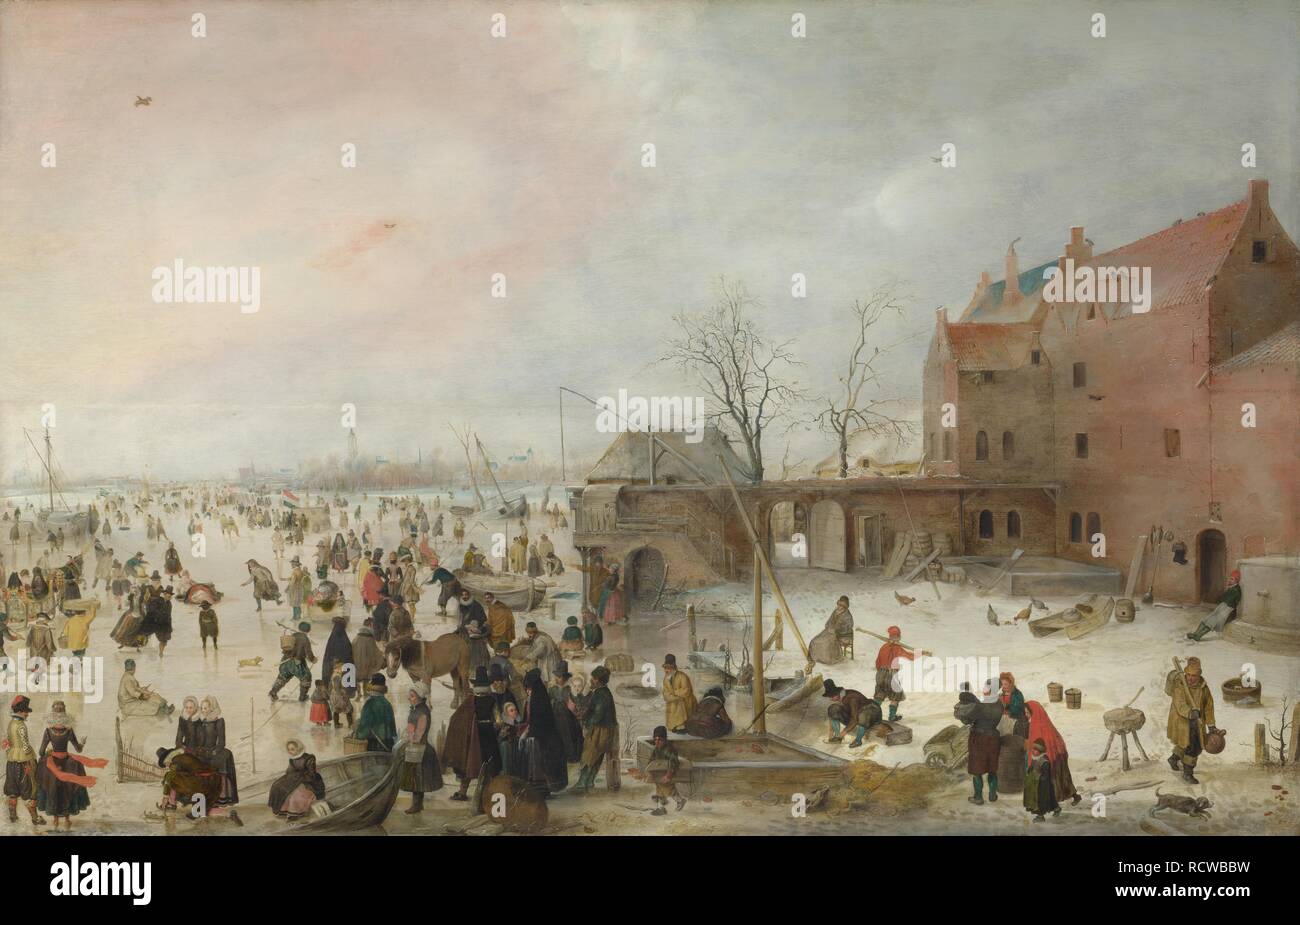 Eine Szene auf dem Eis in der Nähe einer Stadt. Museum: National Gallery, London. Autor: AVERCAMP, Hendrick. Stockfoto